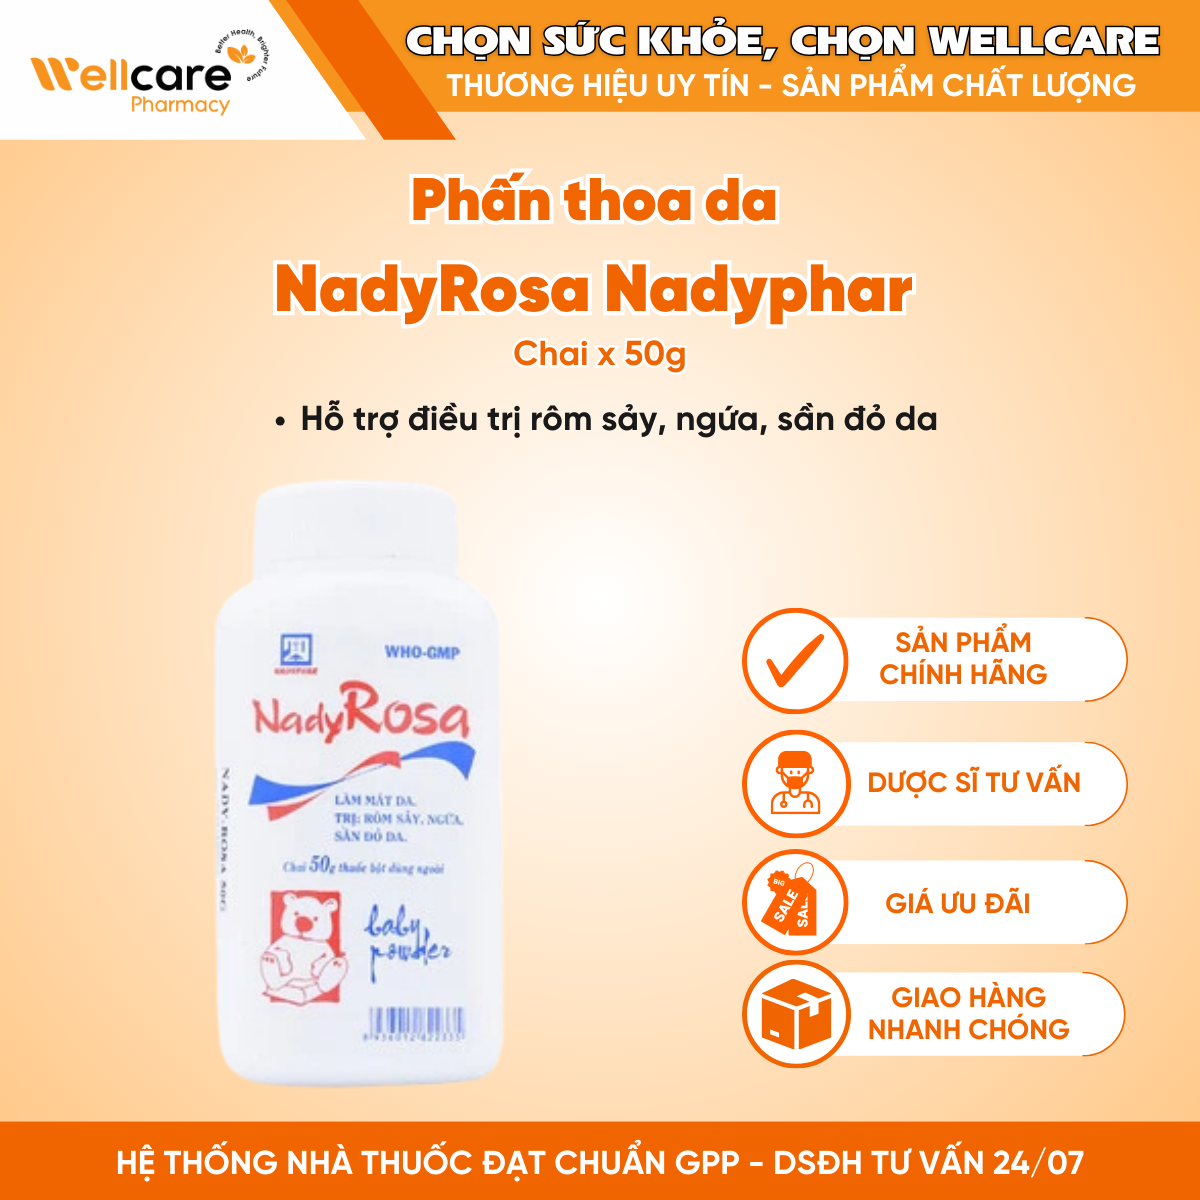 Phấn thoa da NadyRosa Nadyphar – Hỗ trợ điều trị rôm sảy, ngứa (Chai 50g)